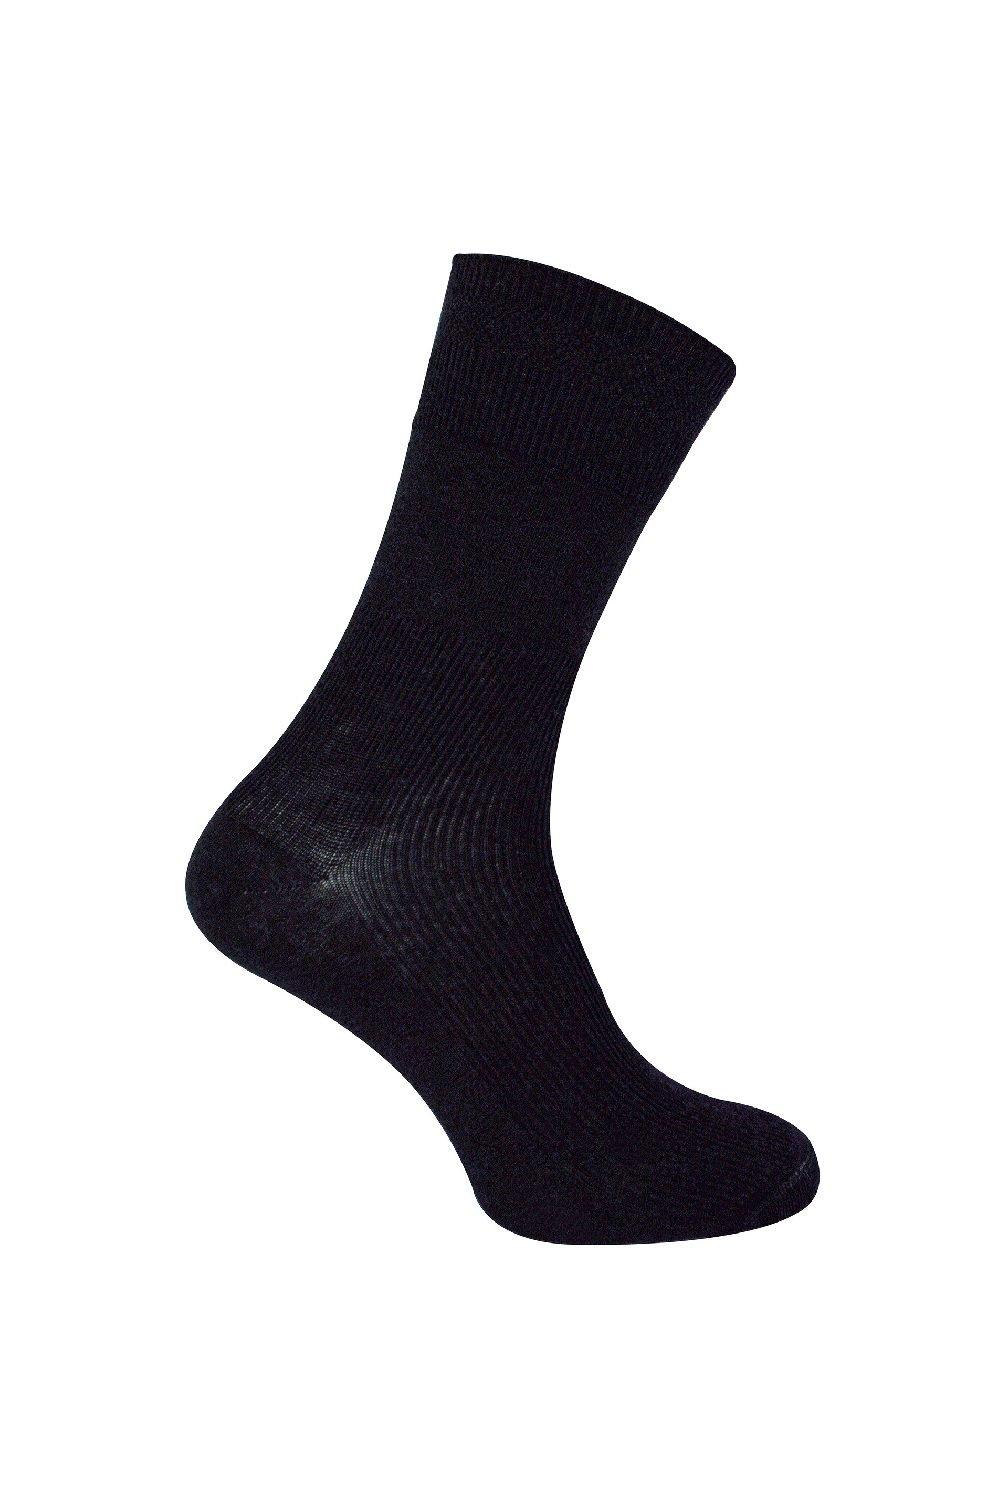 Extra Wide Ribbed Seamless Merino Wool Diabetic Socks in Black